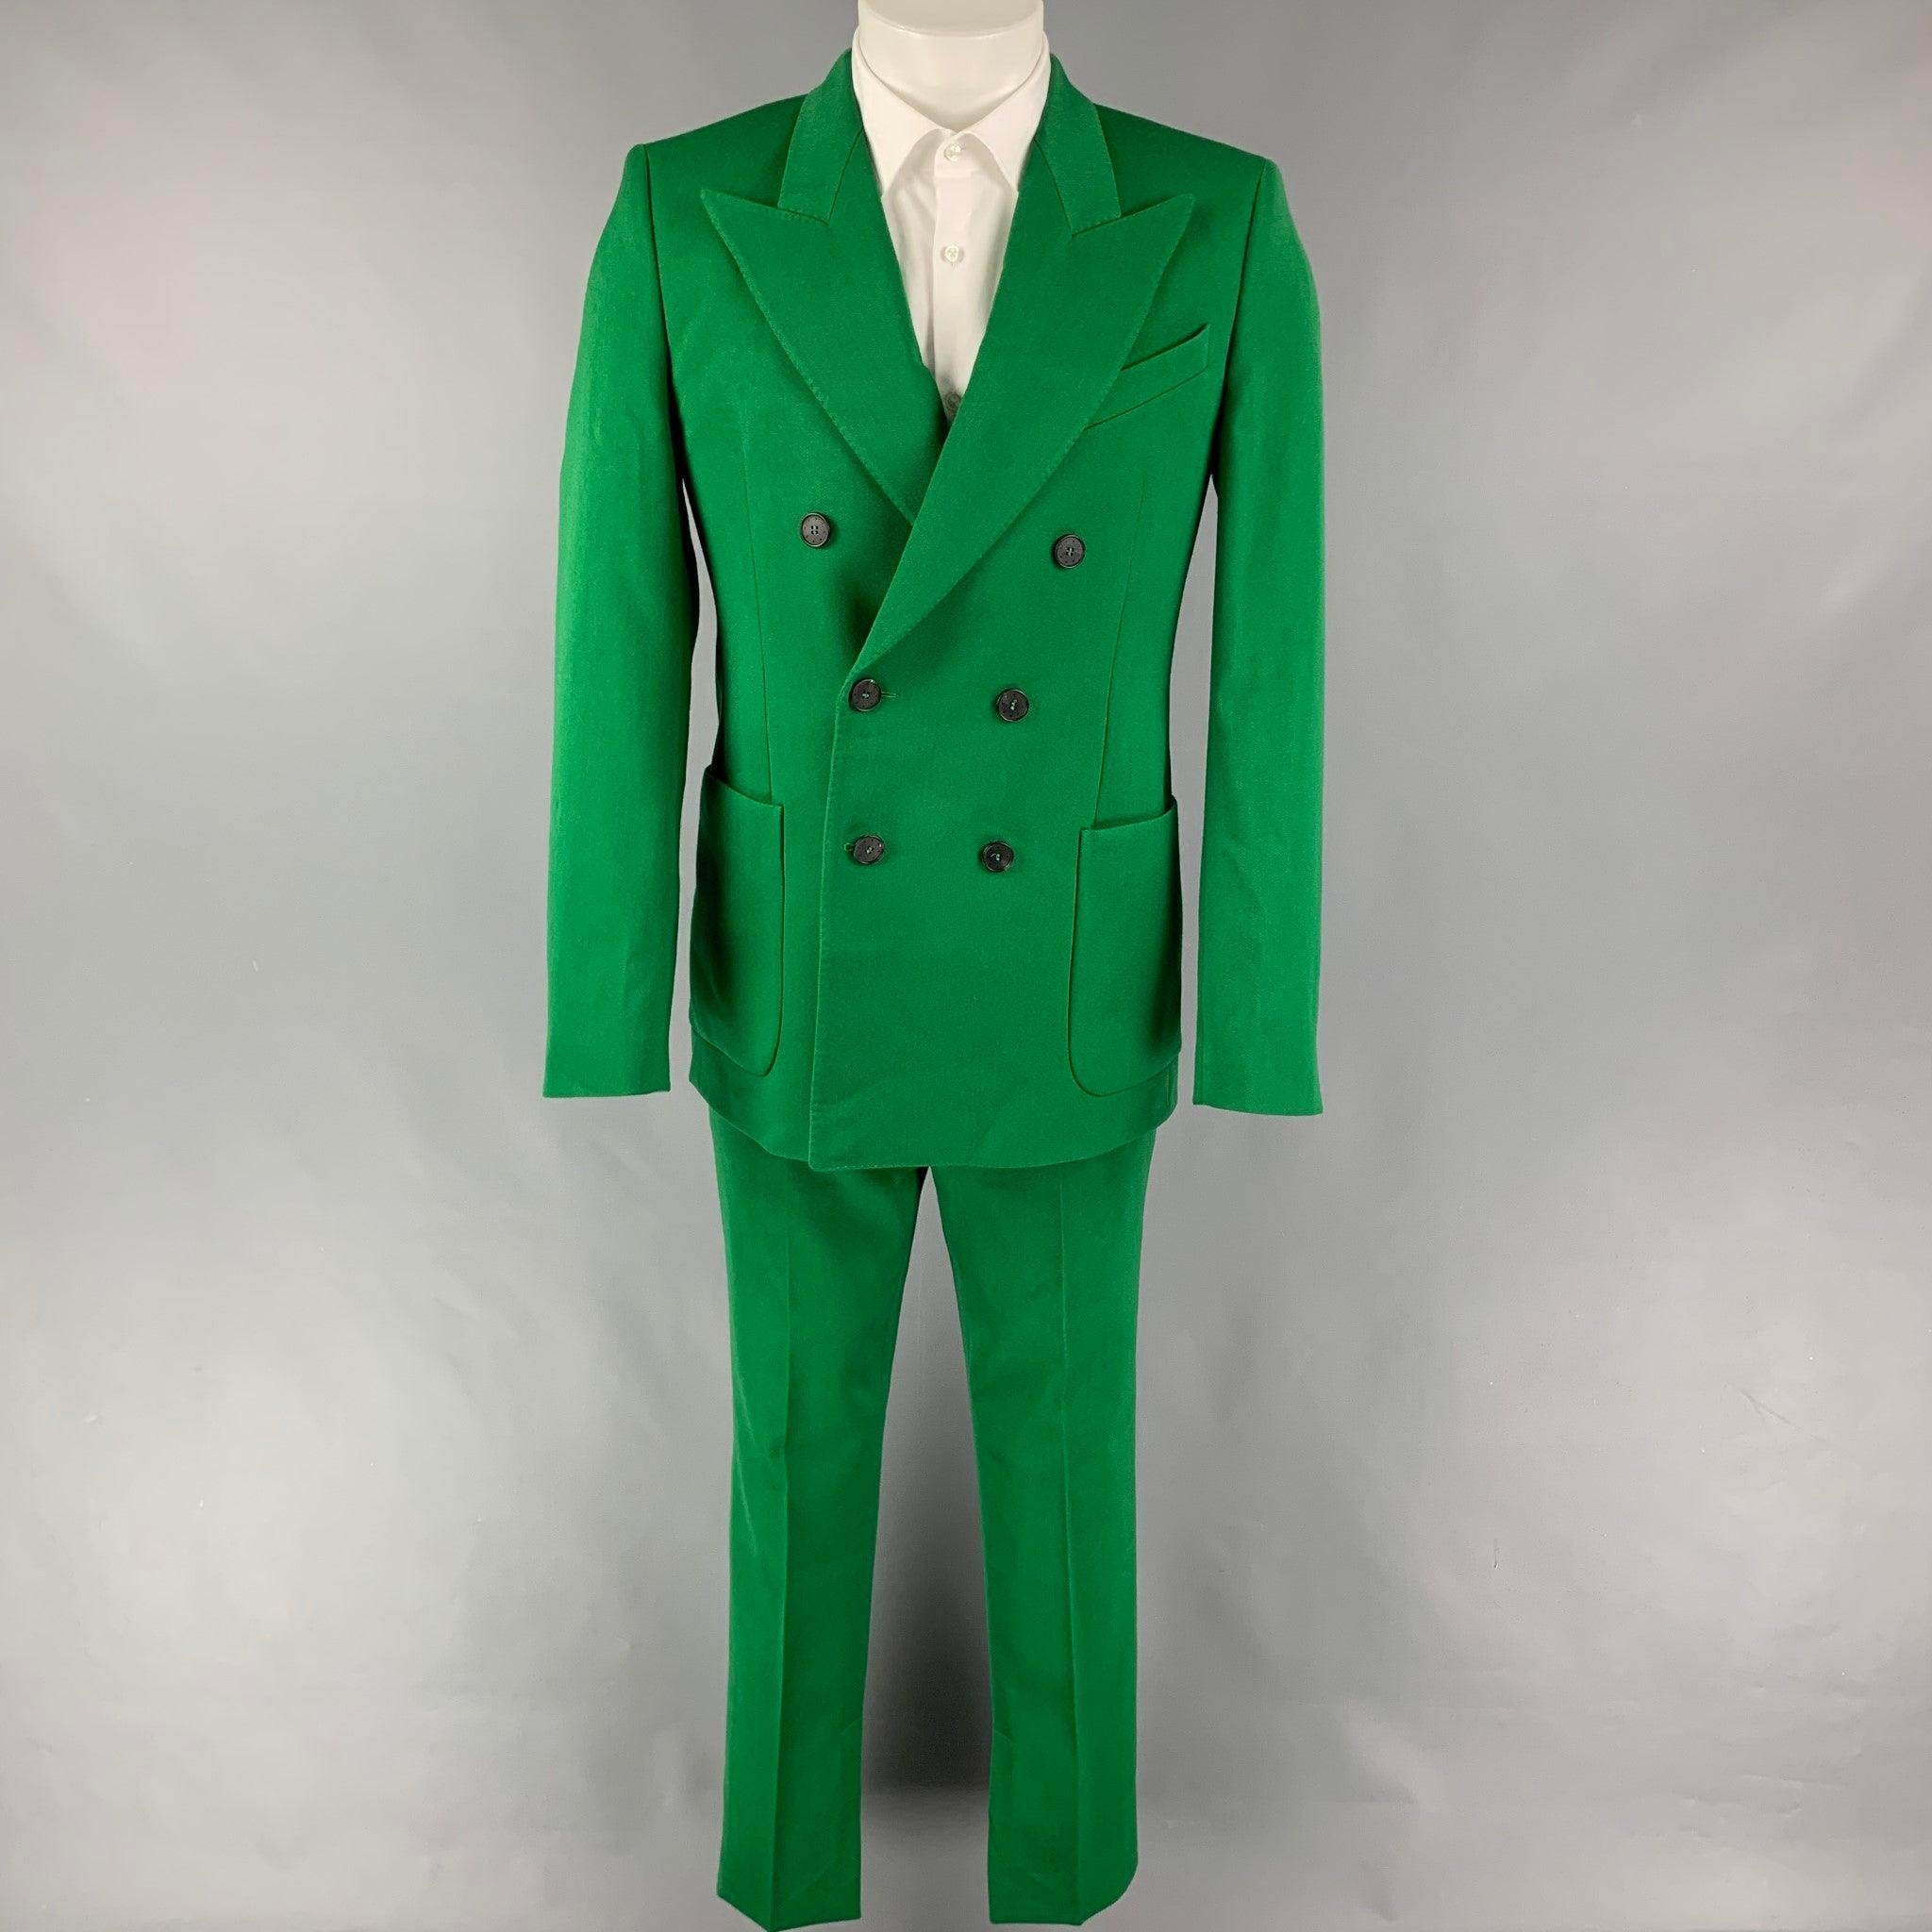 GIVENCHY Pré-printemps 2020
Le costume est en polyester/laine verte avec une demi-doublure et comprend un manteau de sport à double boutonnage avec un revers en pointe et un pantalon assorti à devant plat avec des poignets fendus. Fabriquées en